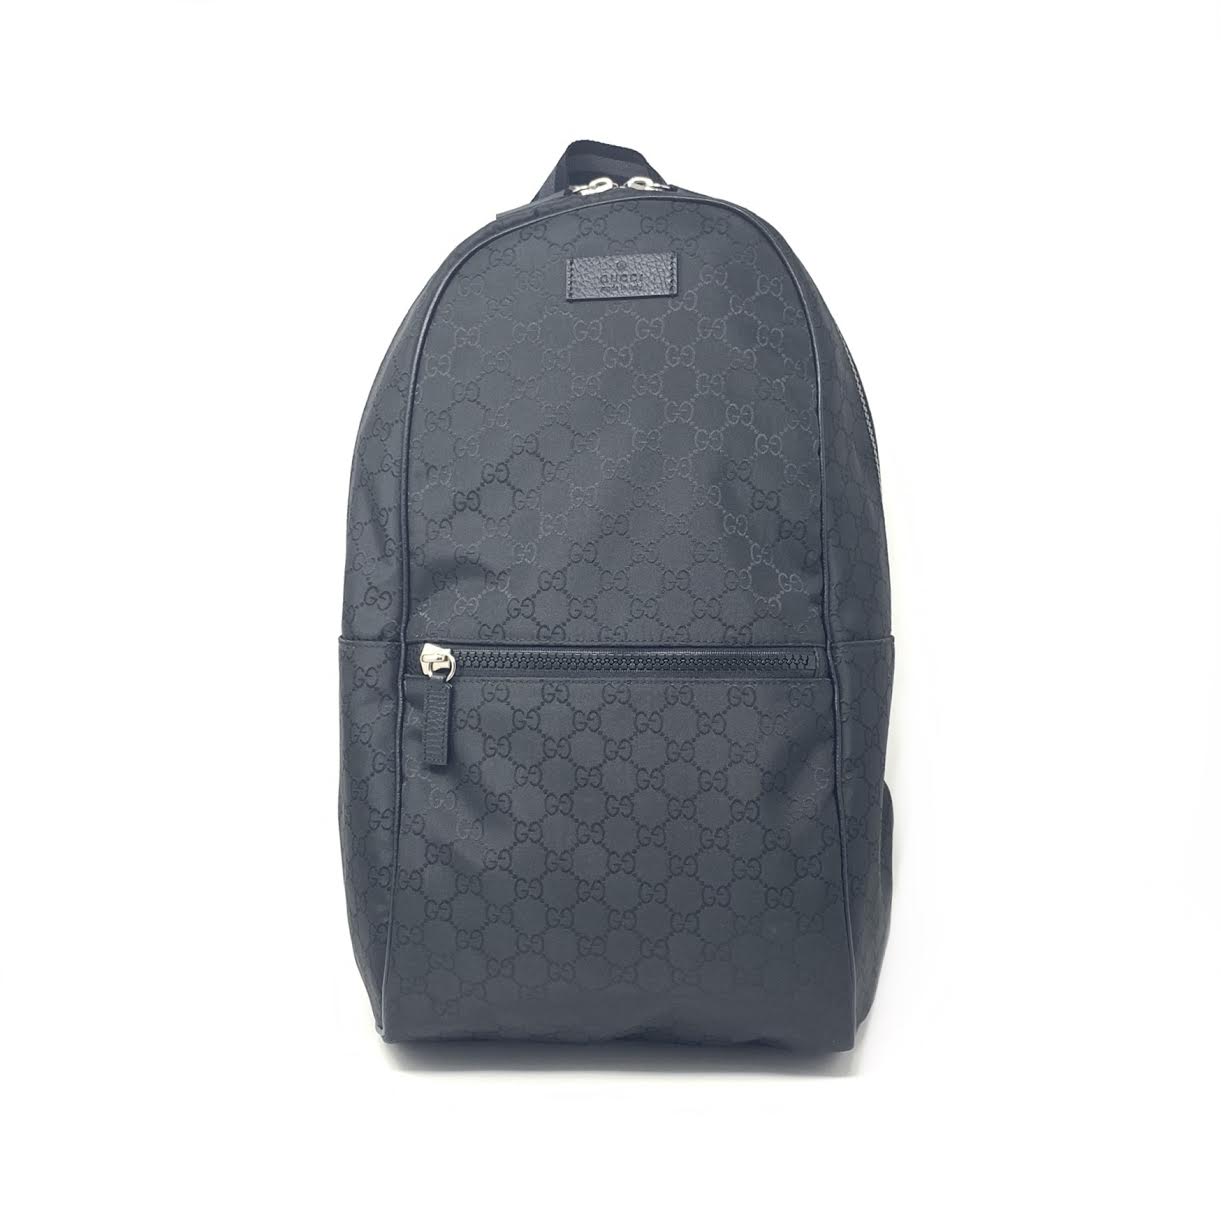 GG Supreme Black Backpack